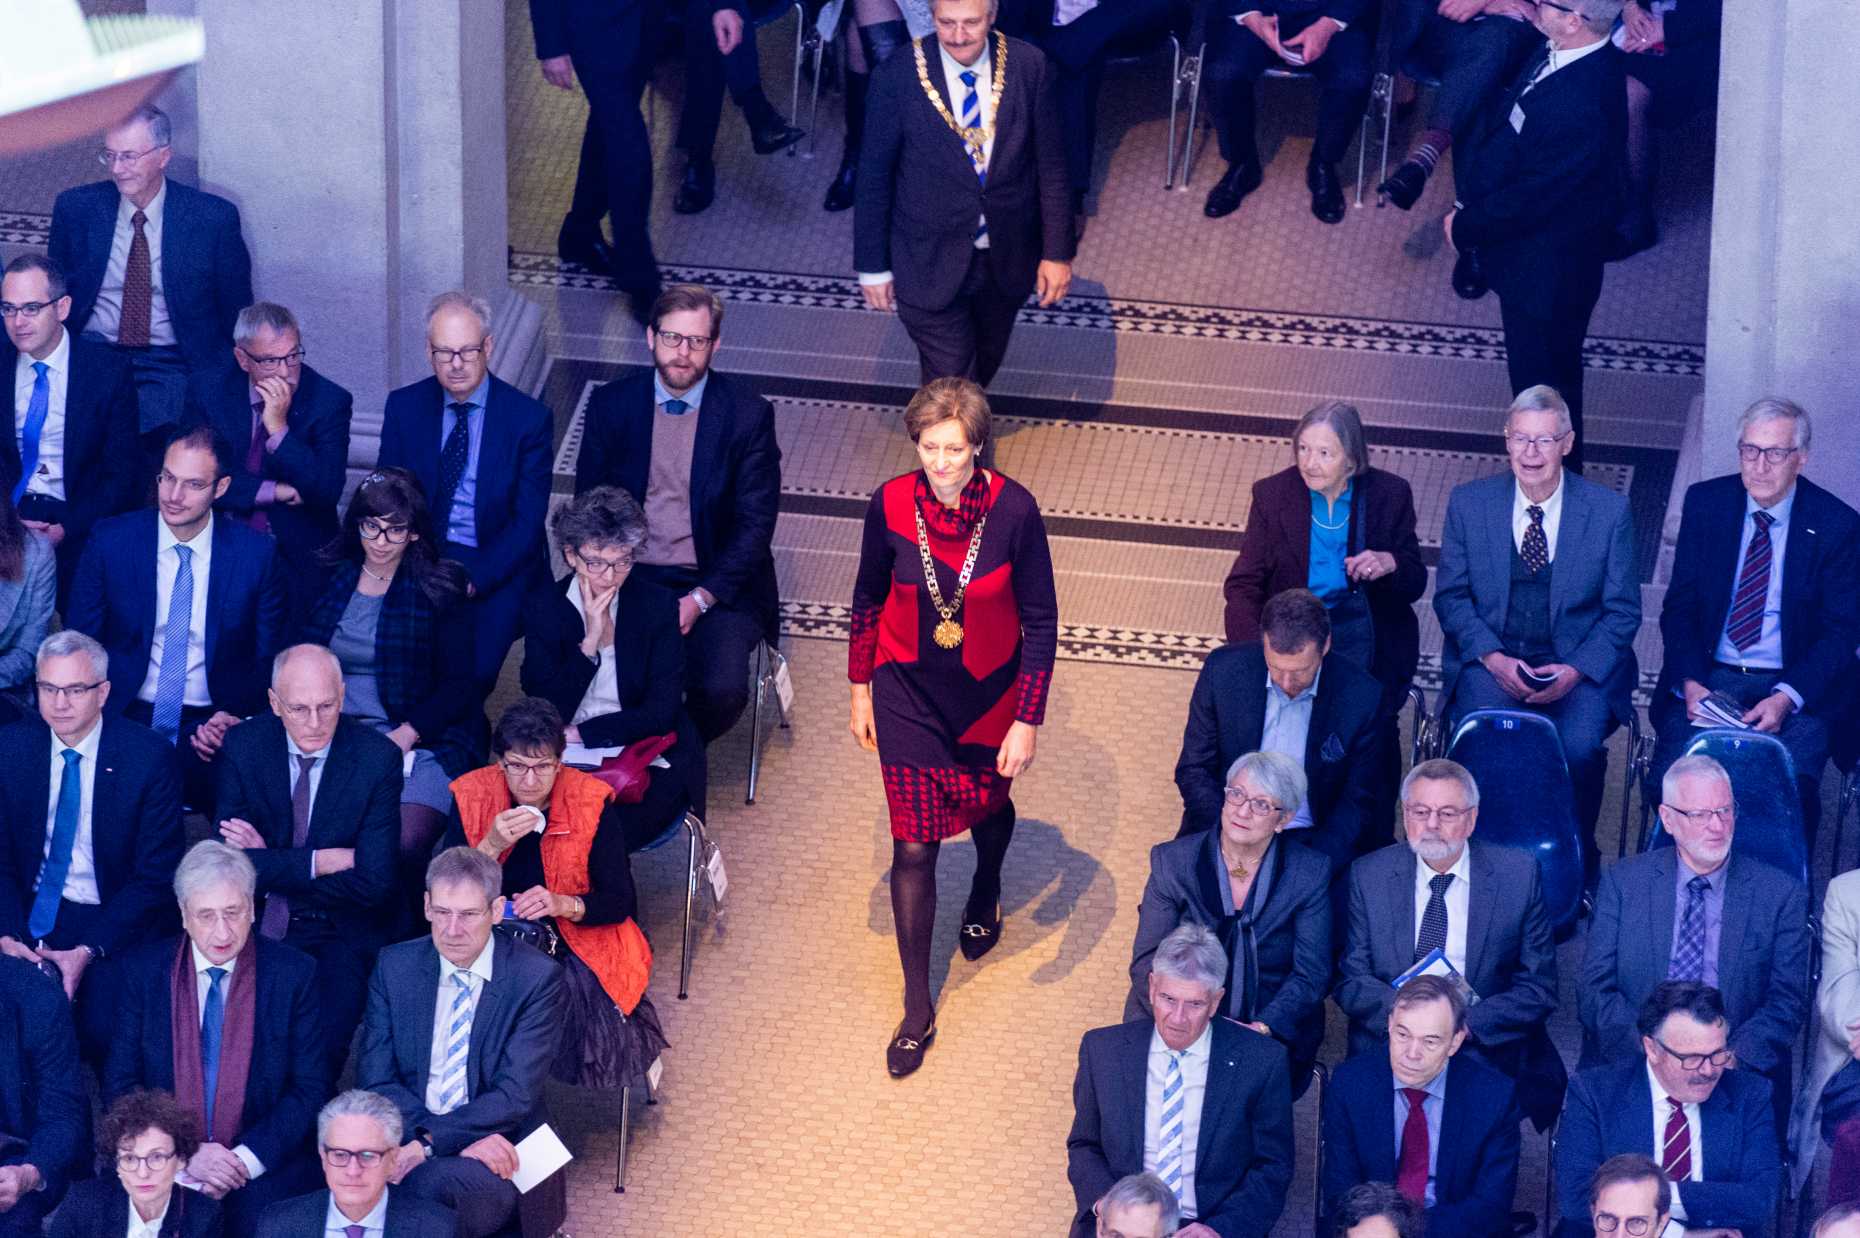 Vergrösserte Ansicht: ETH-Rektorin Sarah Springman beim Einmarsch am ETH-Tag 2018. (Bild: ETH Zürich / Oliver Bartenschlager)